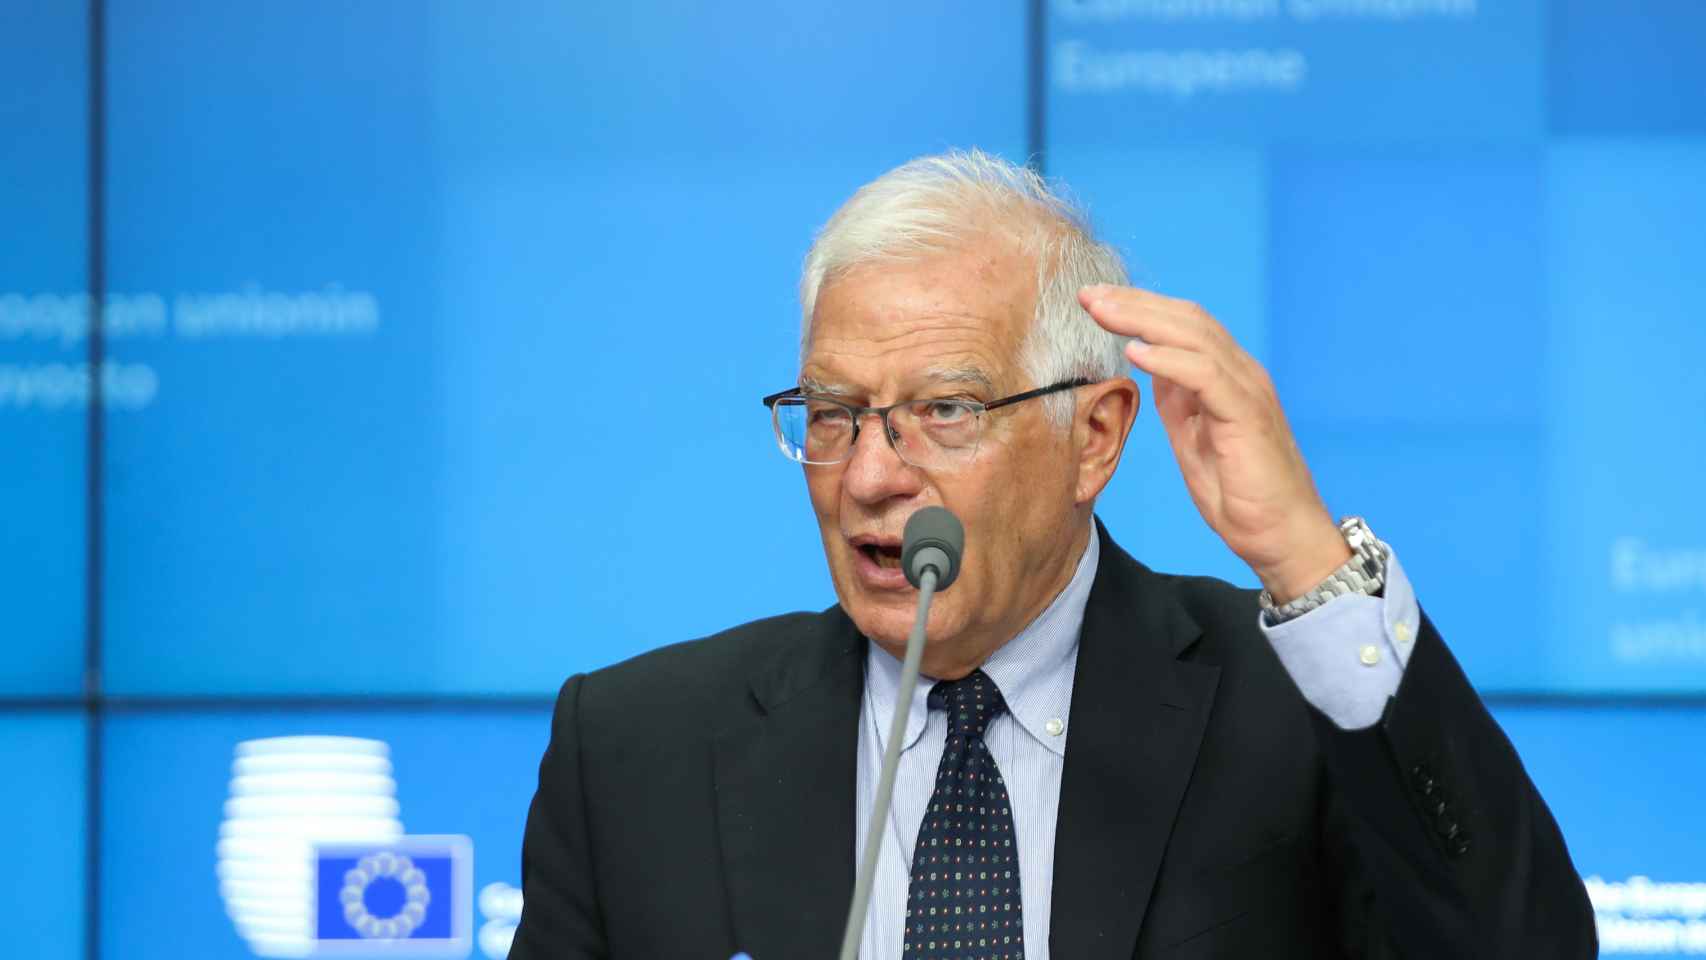 El jefe de la diplomacia de la UE, Josep Borrell, ha relanzado el debate sobre un Ejército europeo